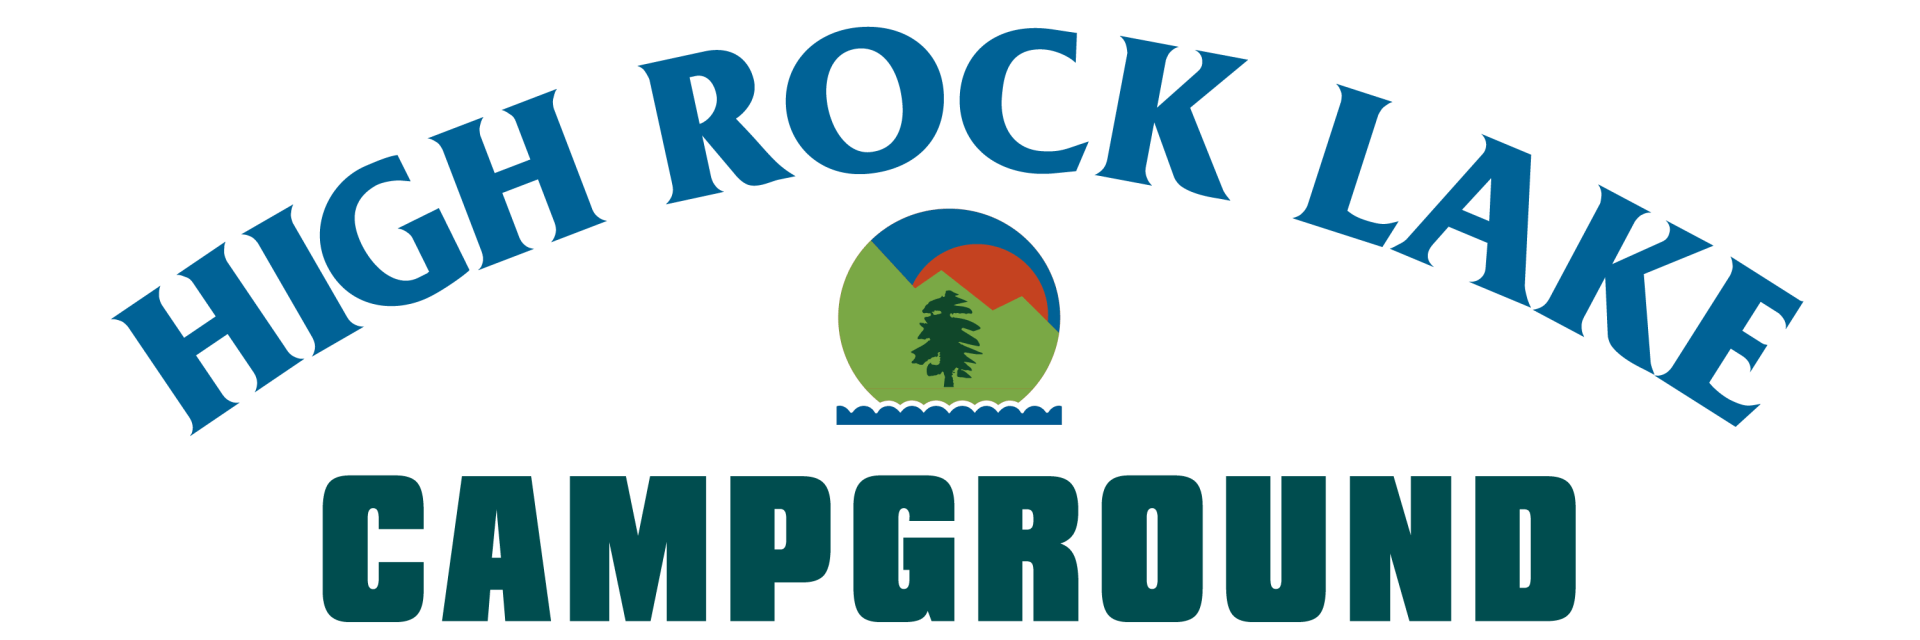 High Rock Lake Campground Logo